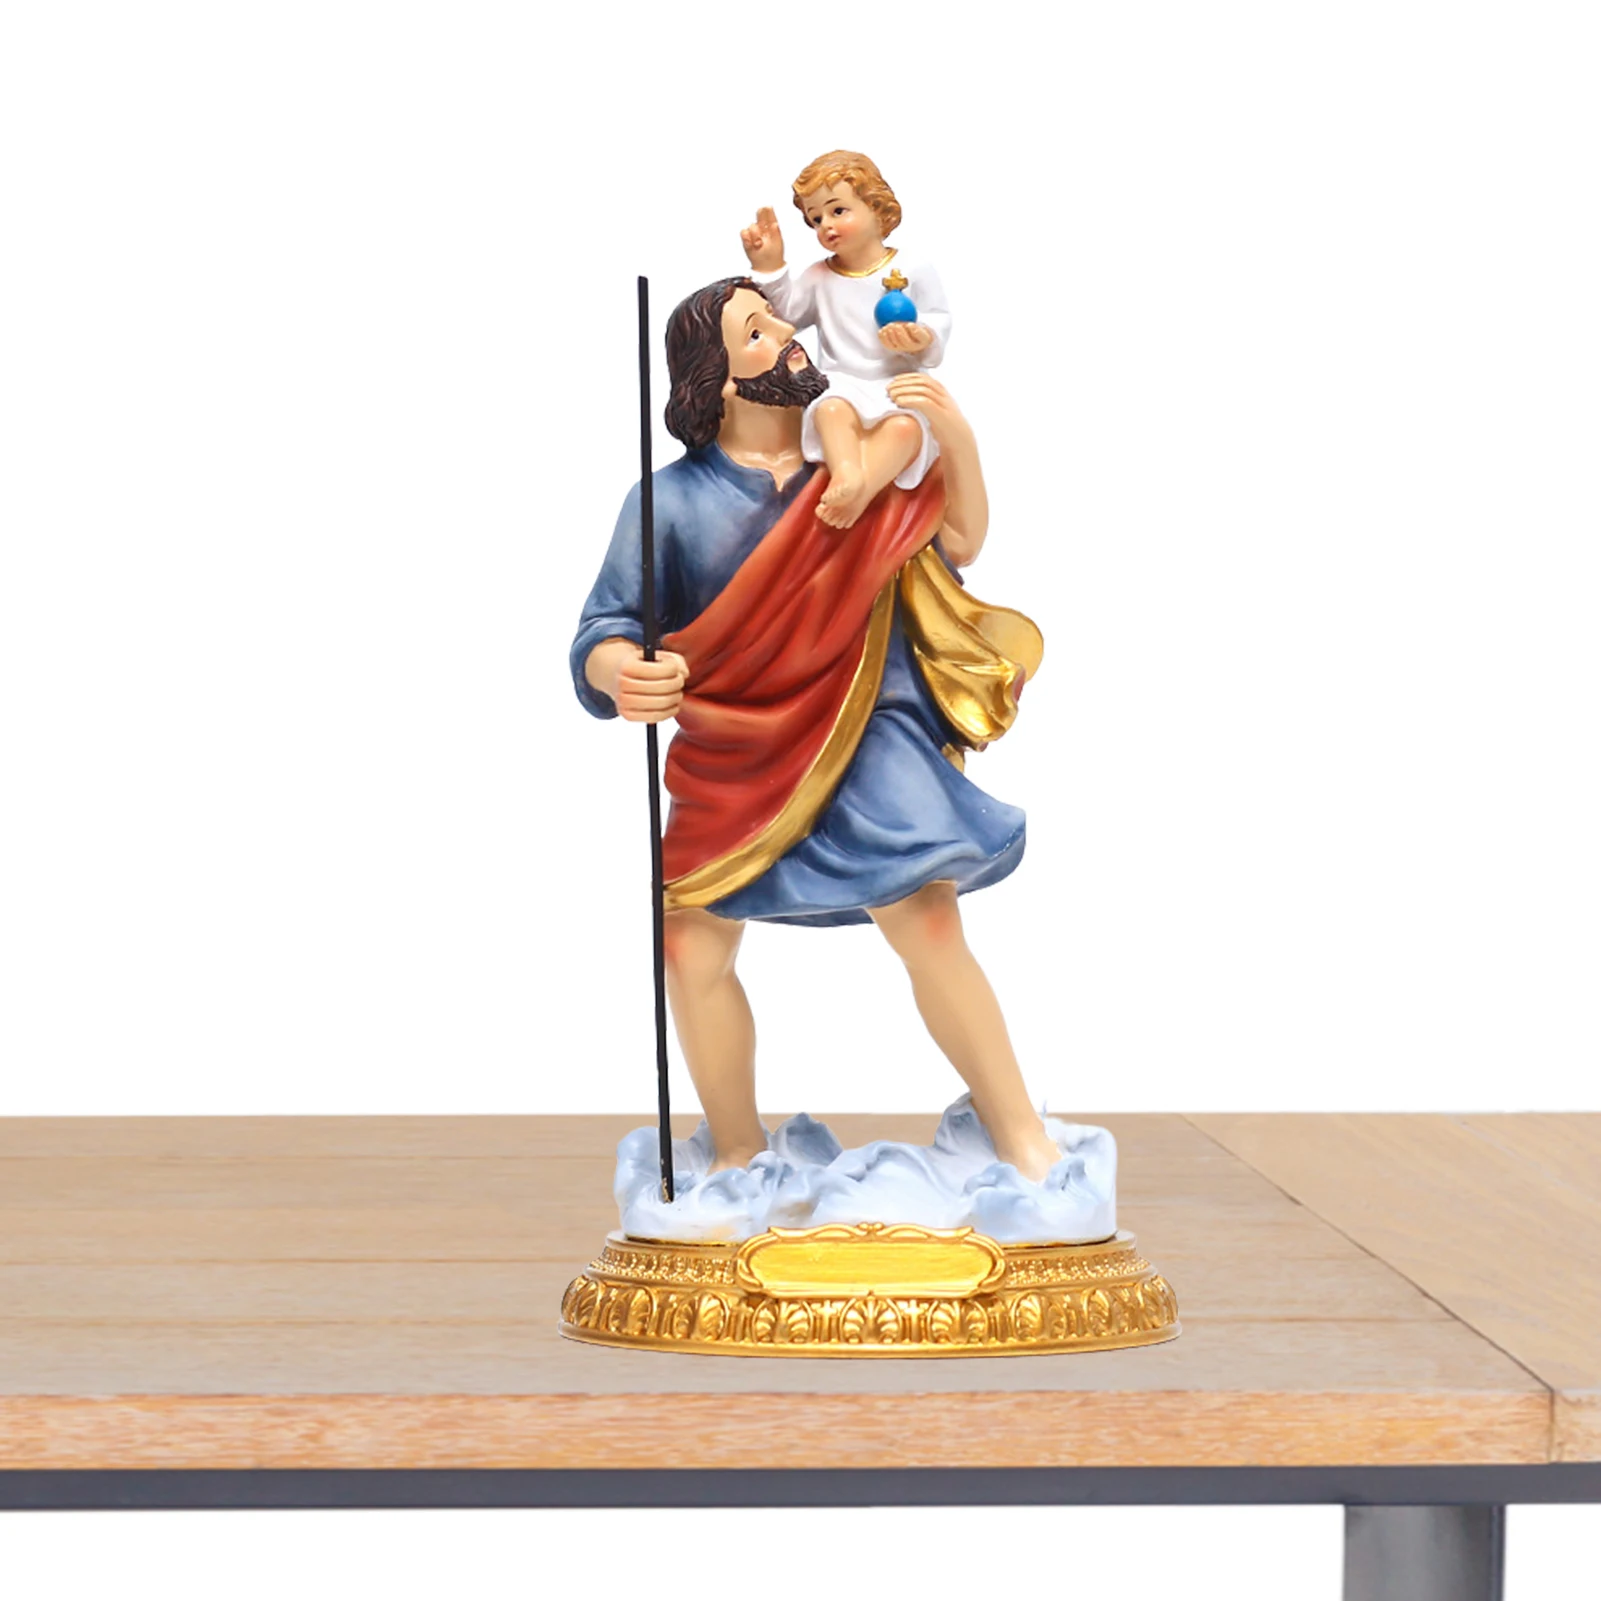 

Фигурка св. Иосифа и ребенка Иисуса, коллекционная скульптура в масштабе 8,7 для возрождения, католической религии, святой семьи